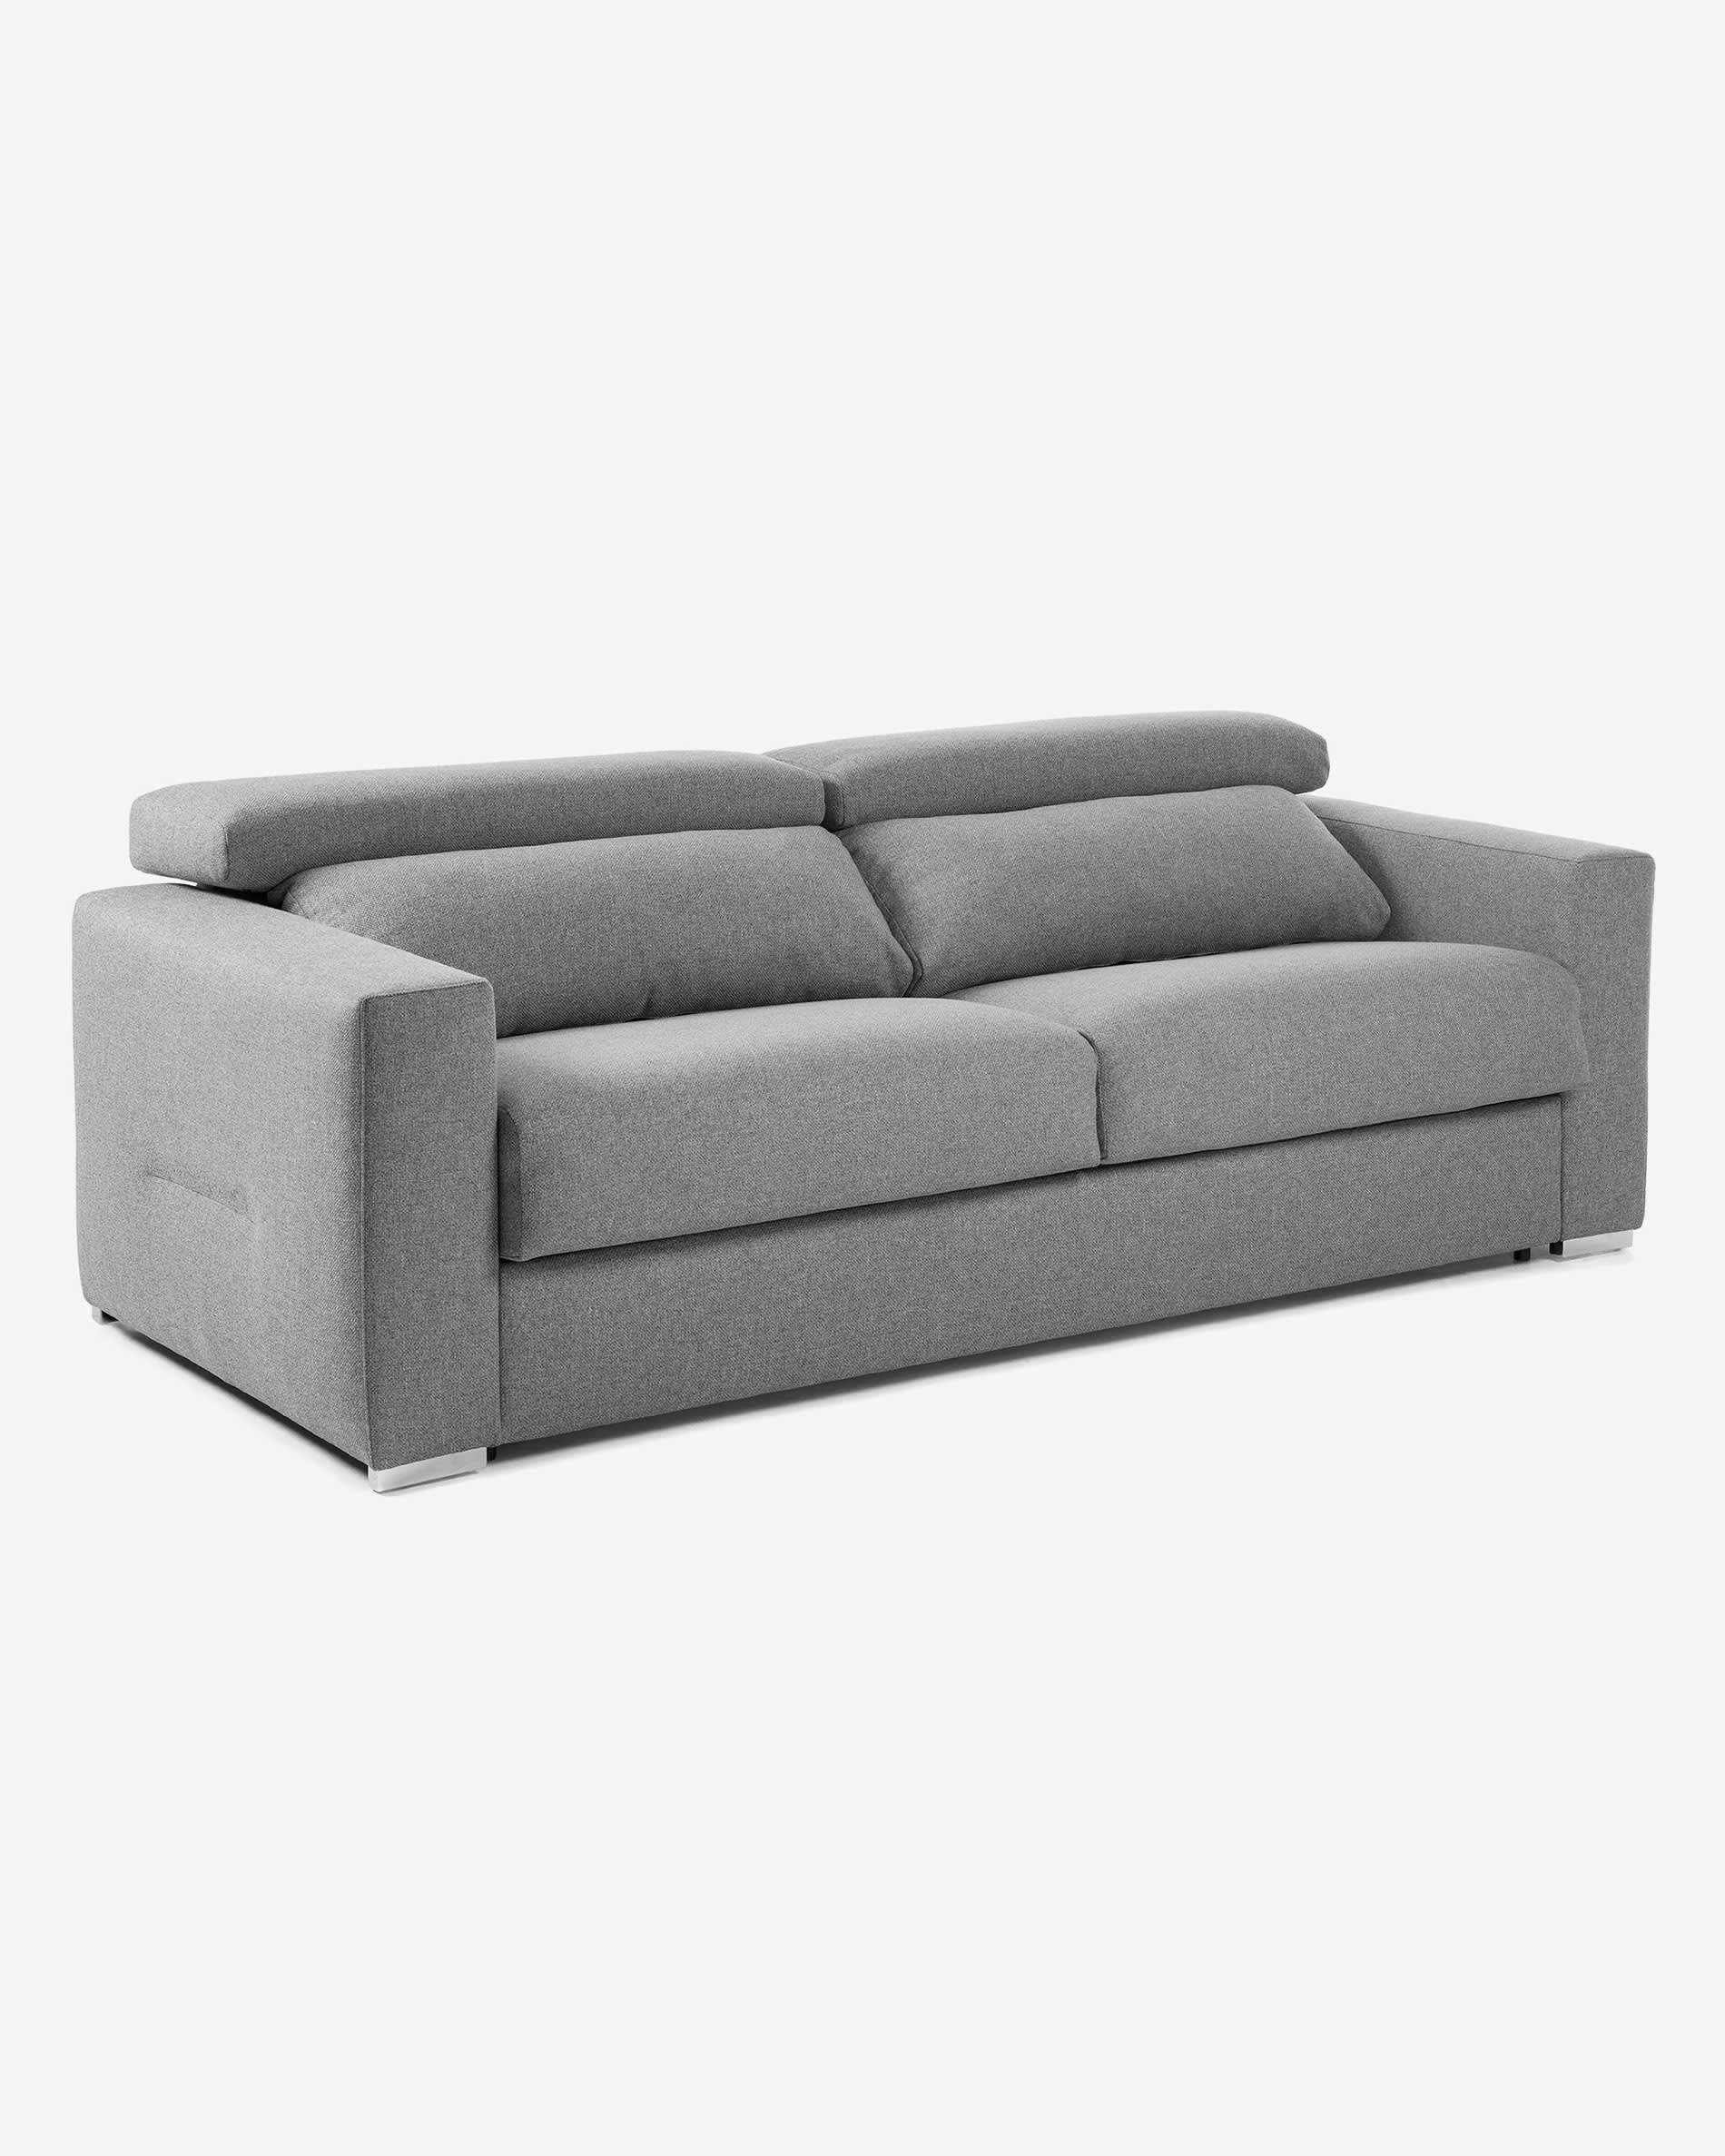 Sofá cama Kant 160 cm poliuretano gris claro | Kave Home